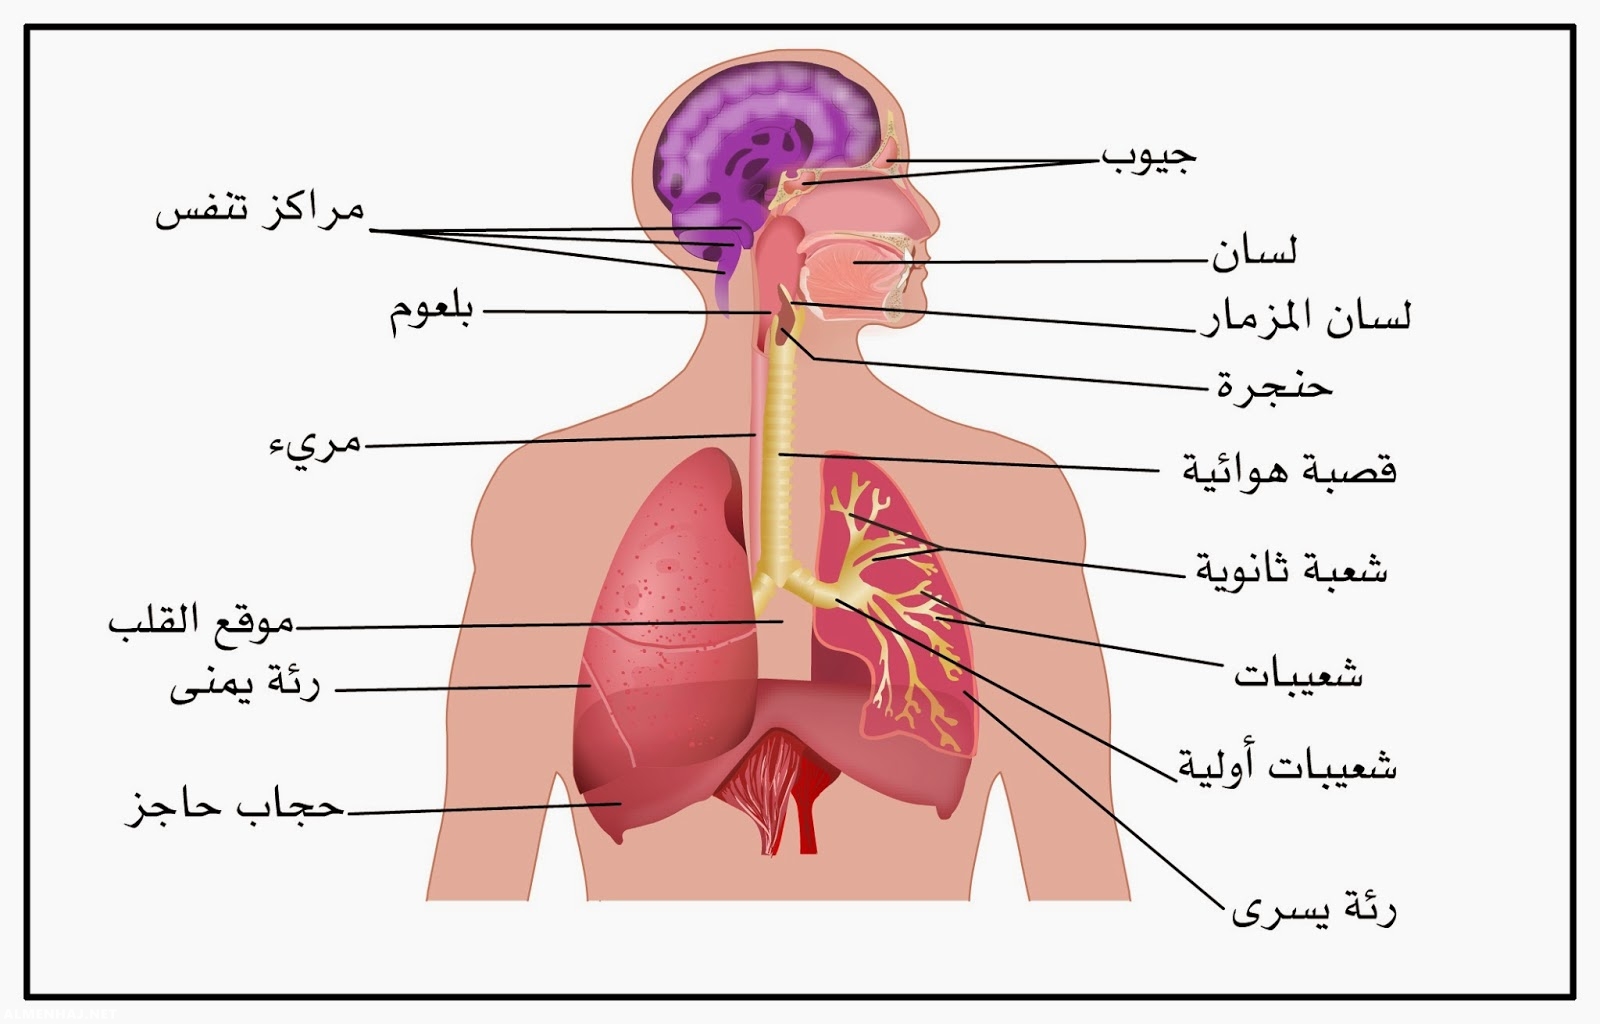 كيف تحدث عملية التنفس